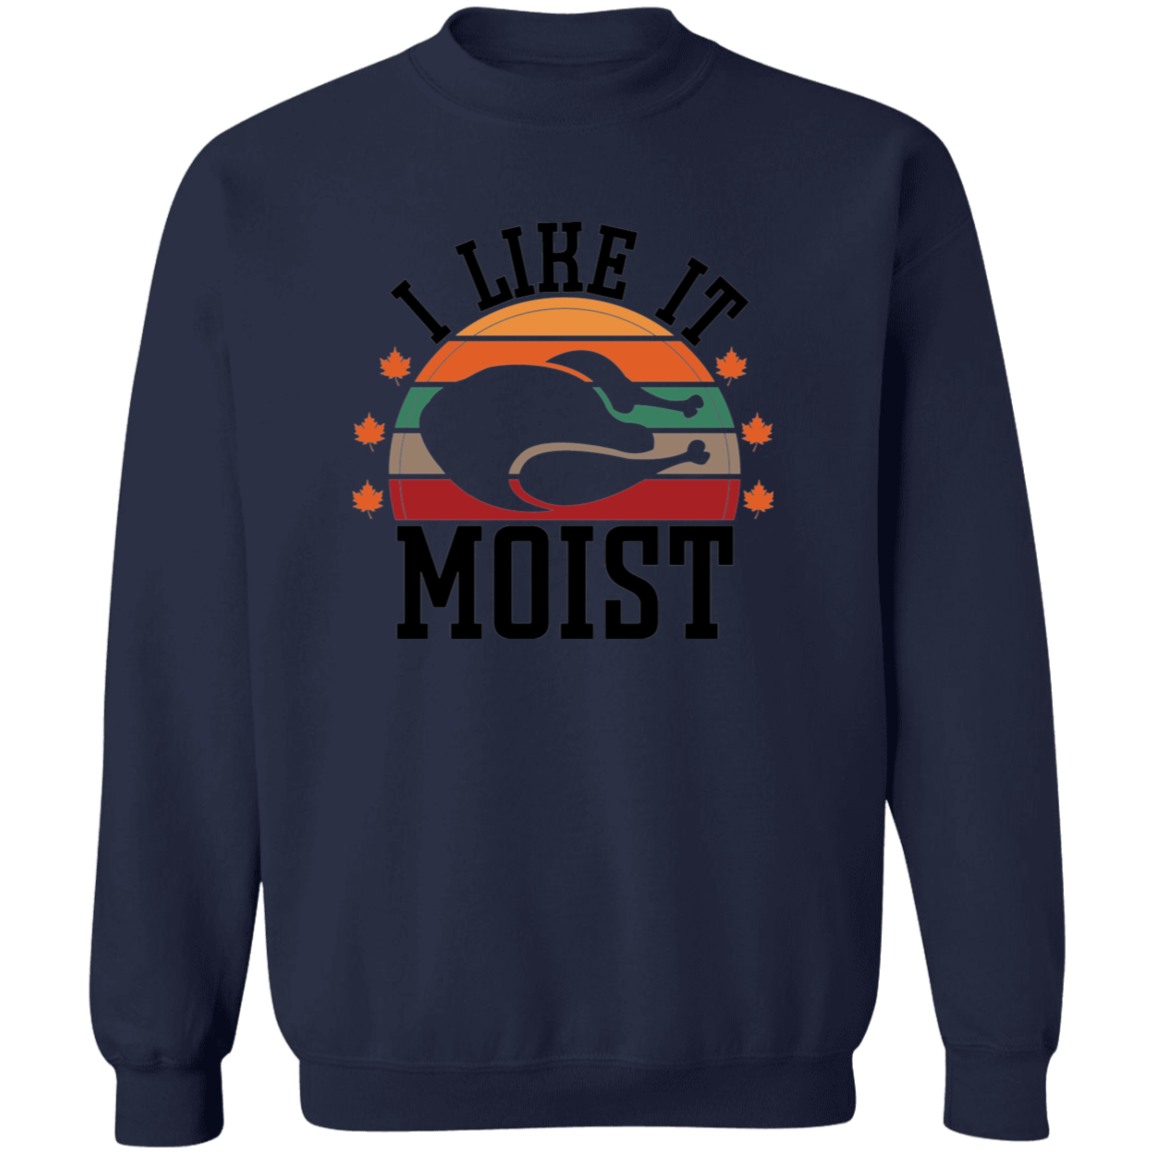 I Like It Moist Turkey Sweatshirt